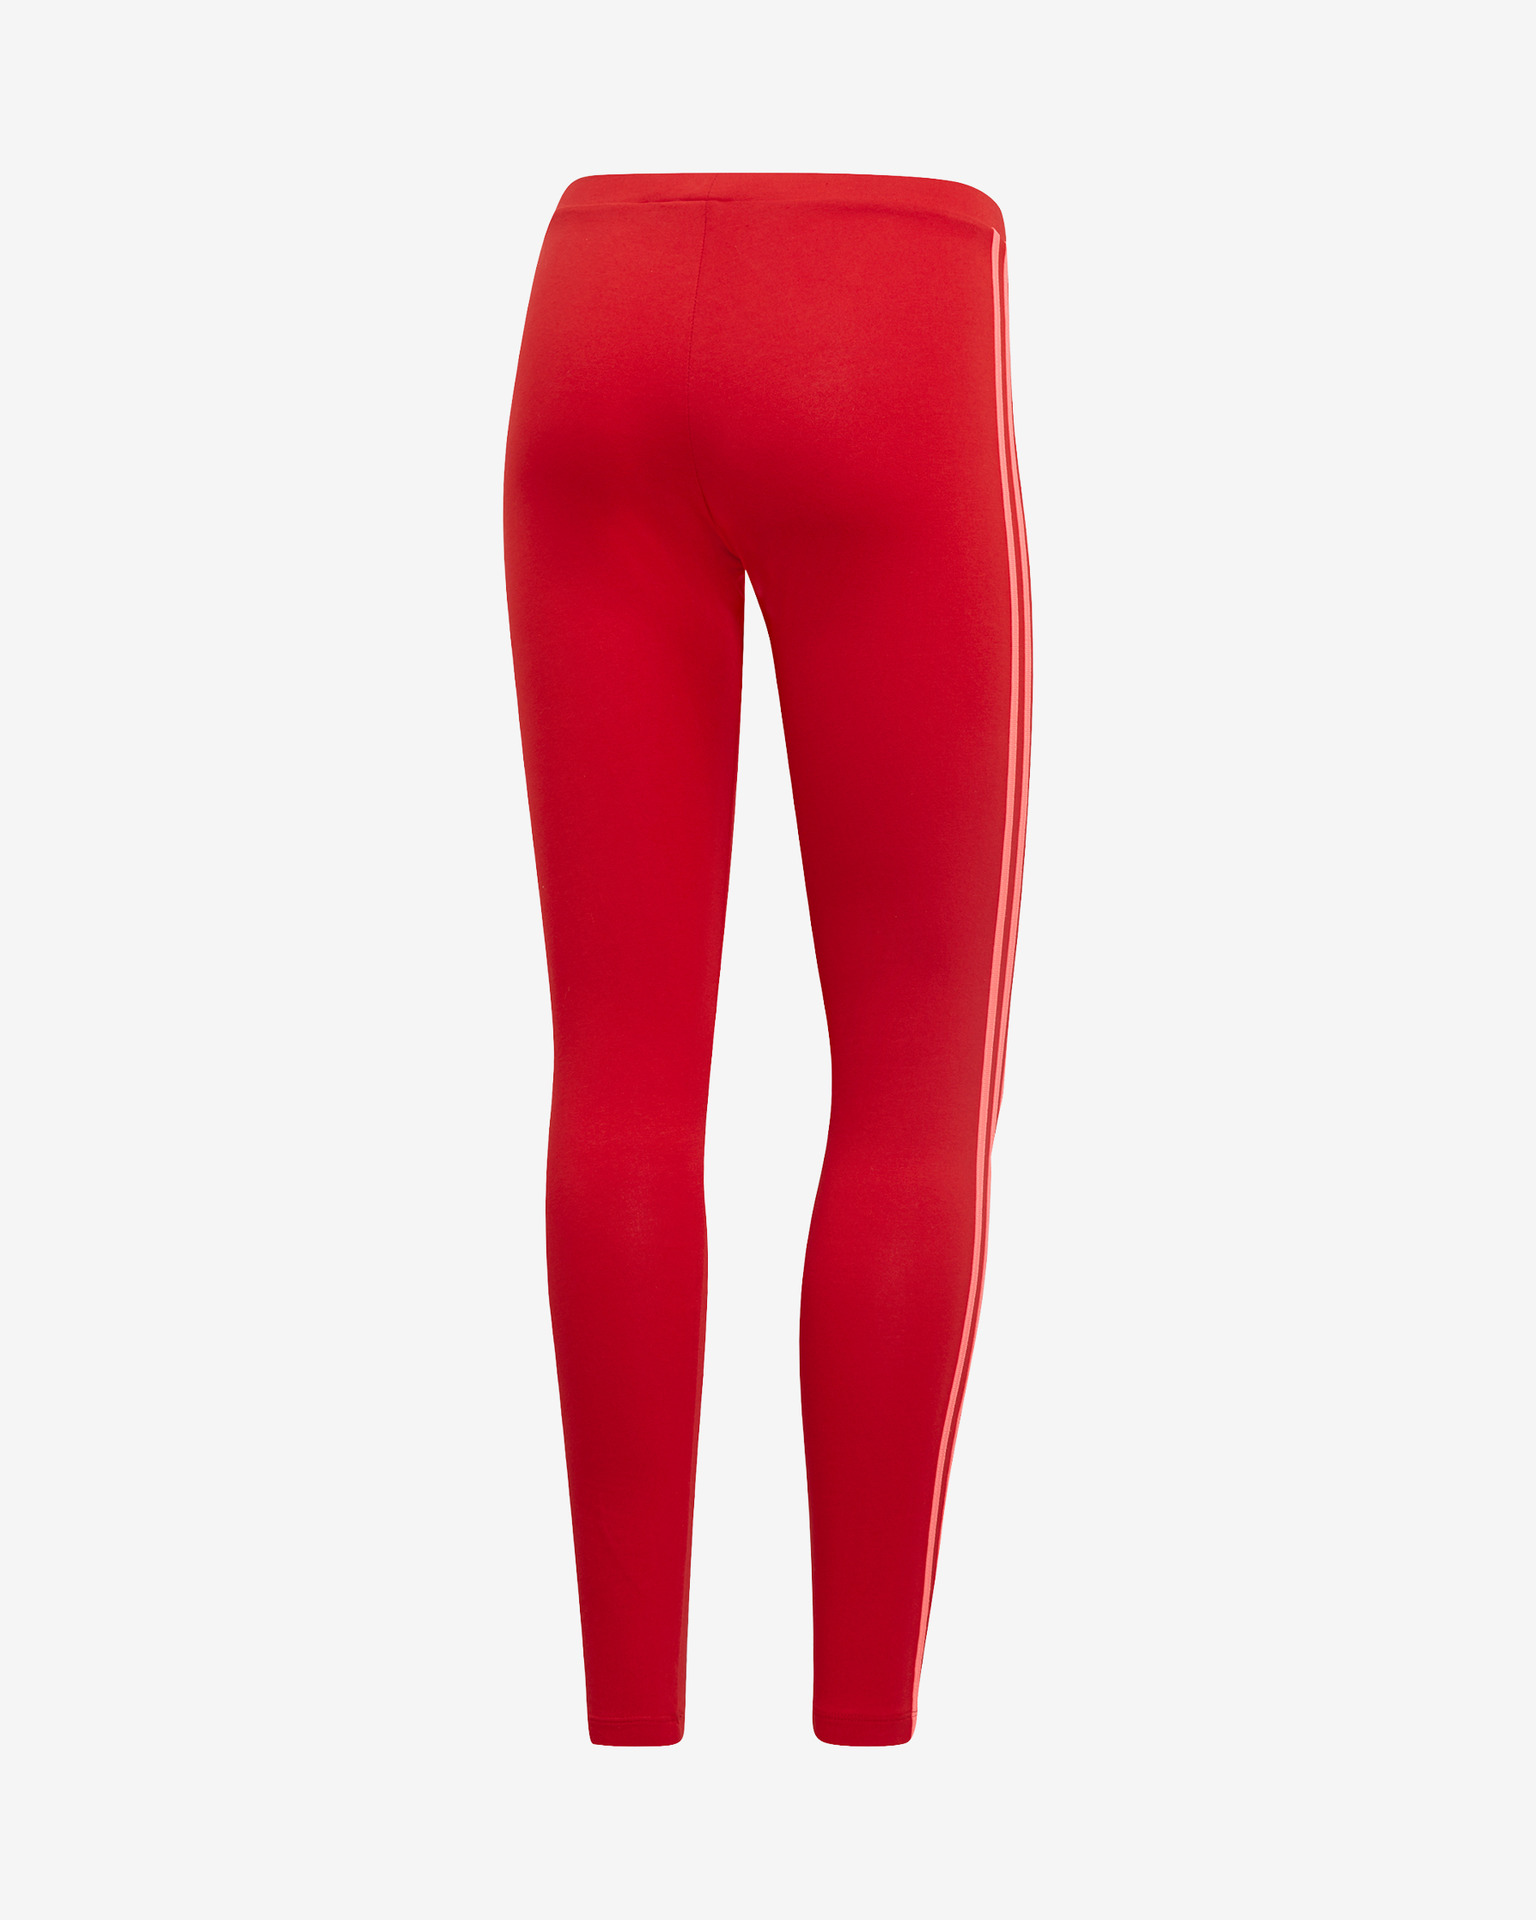 LAST ONE adidas originals red 3 stripe leggings XL  Striped leggings,  Leggings are not pants, Leggings